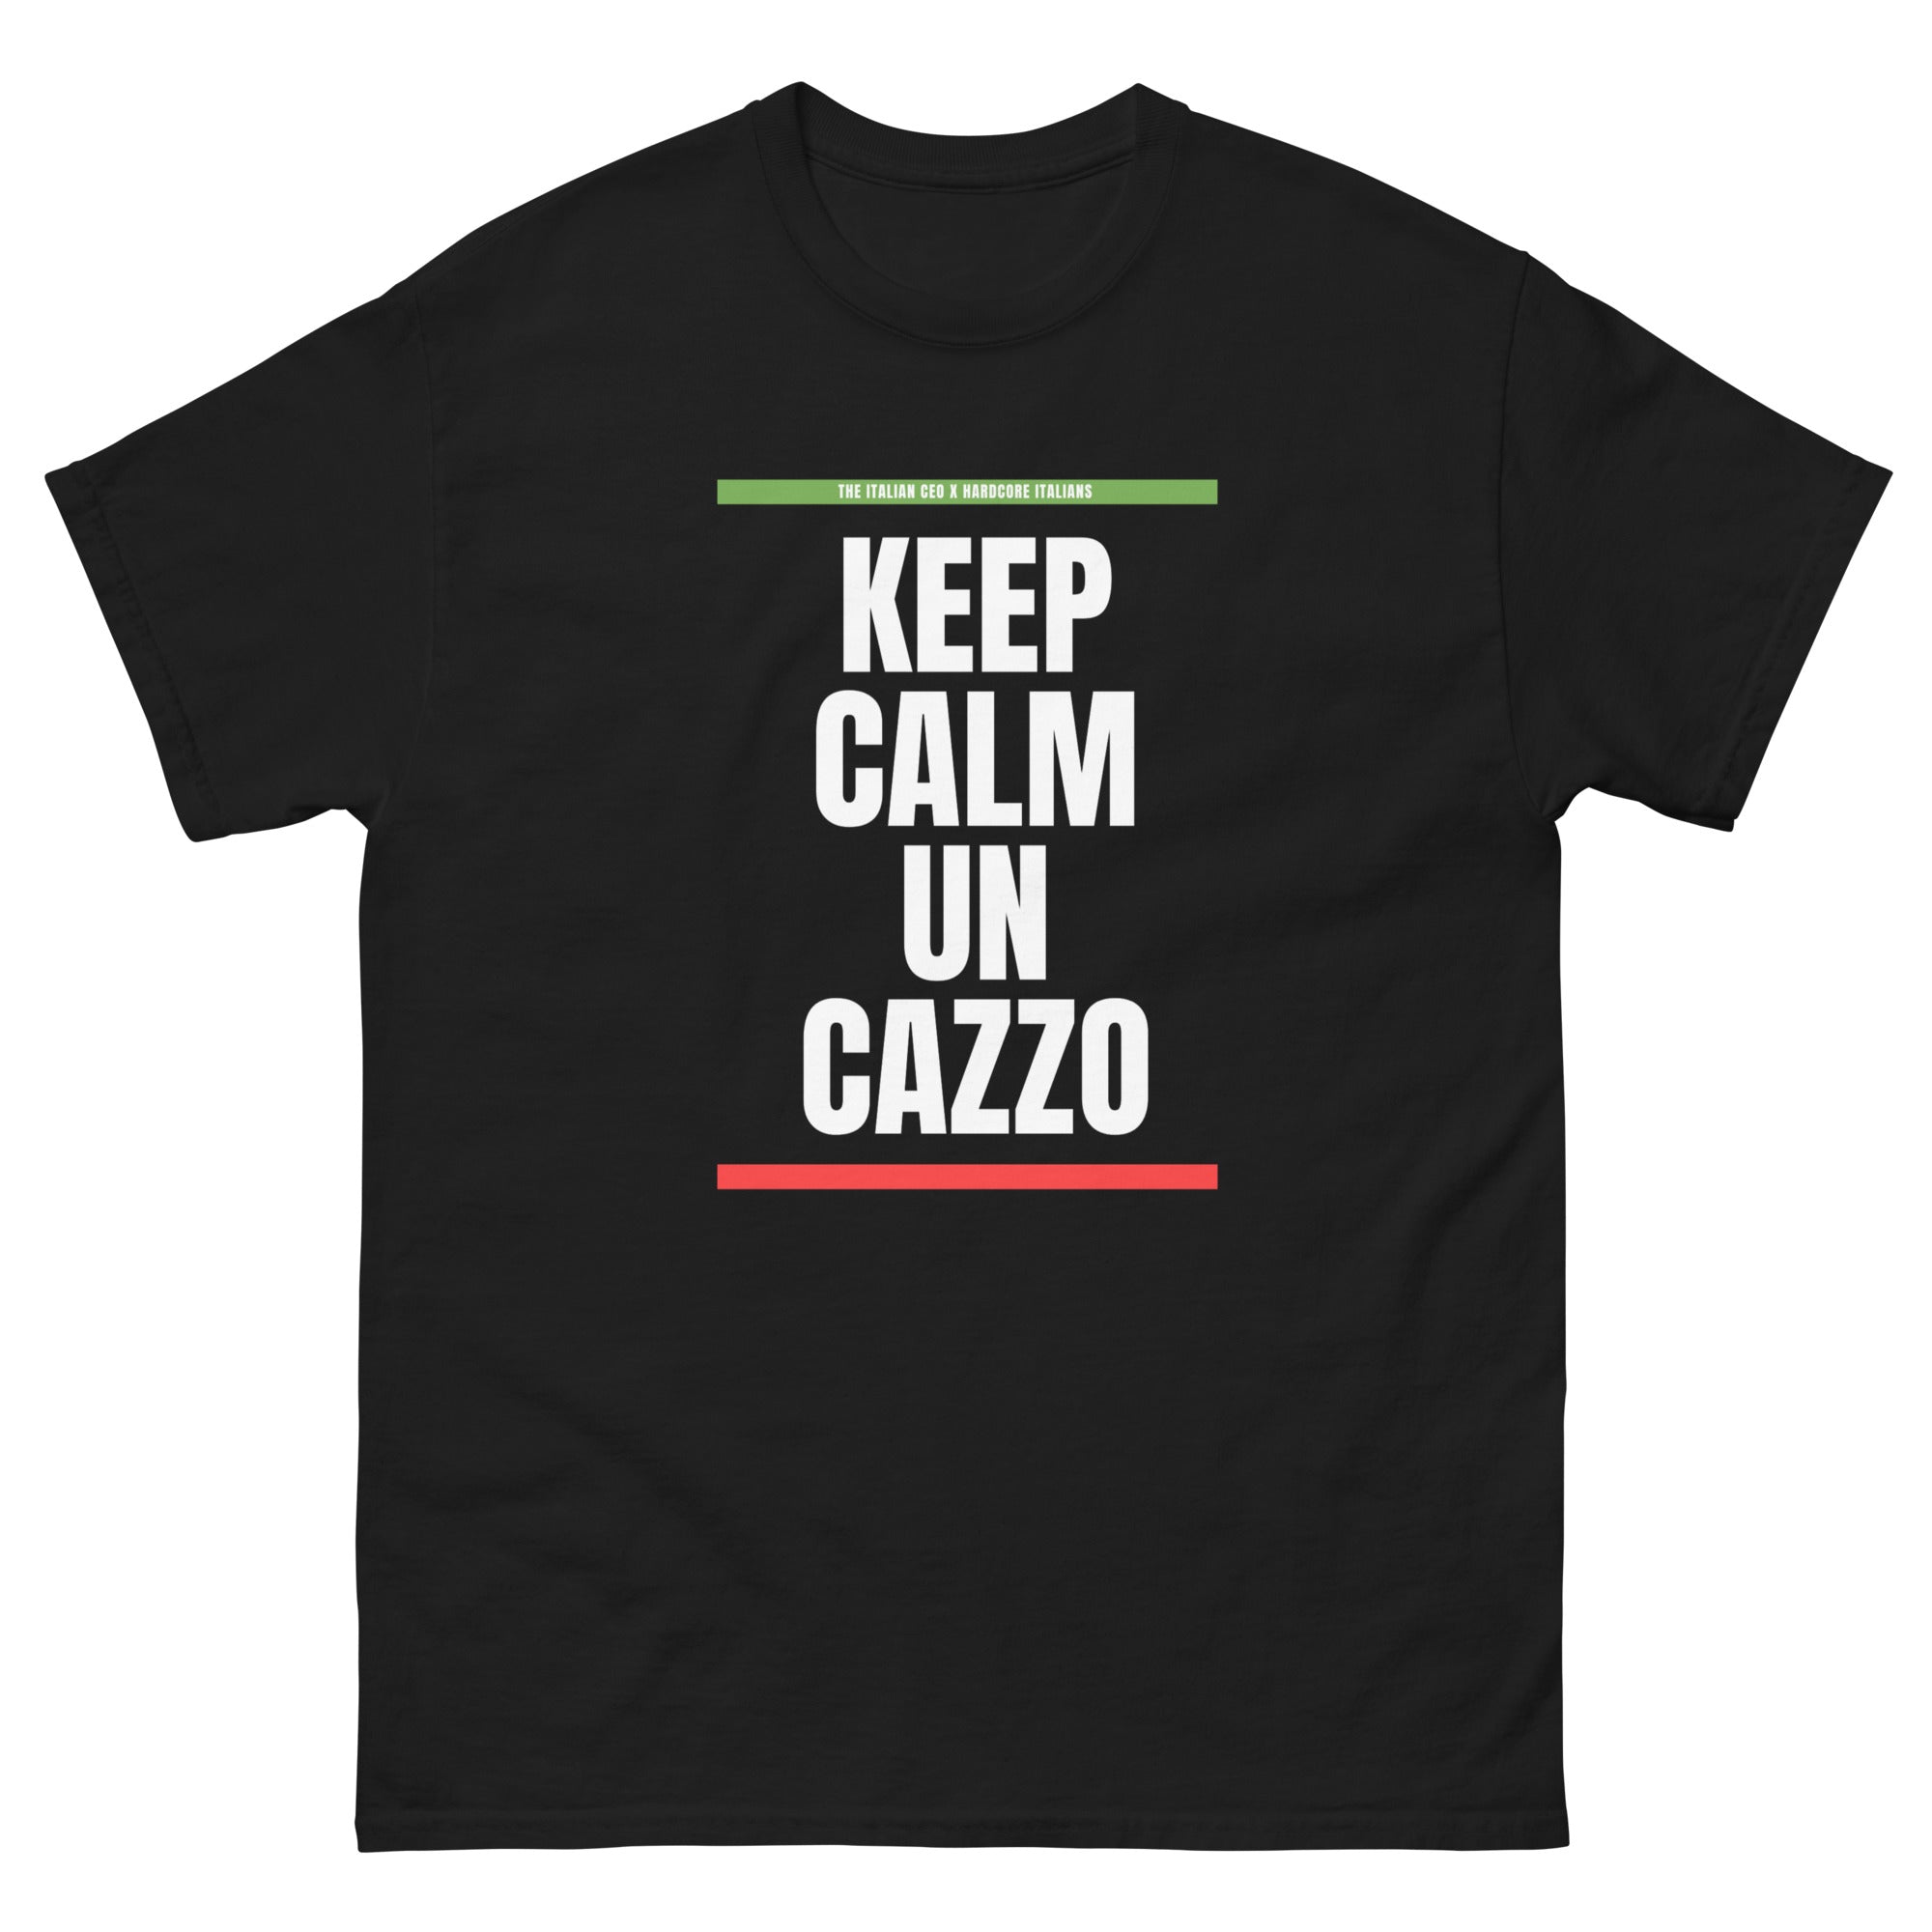 Keep Calm Un Cazzo Tee - Jessica Marchi x Hardcore Italians